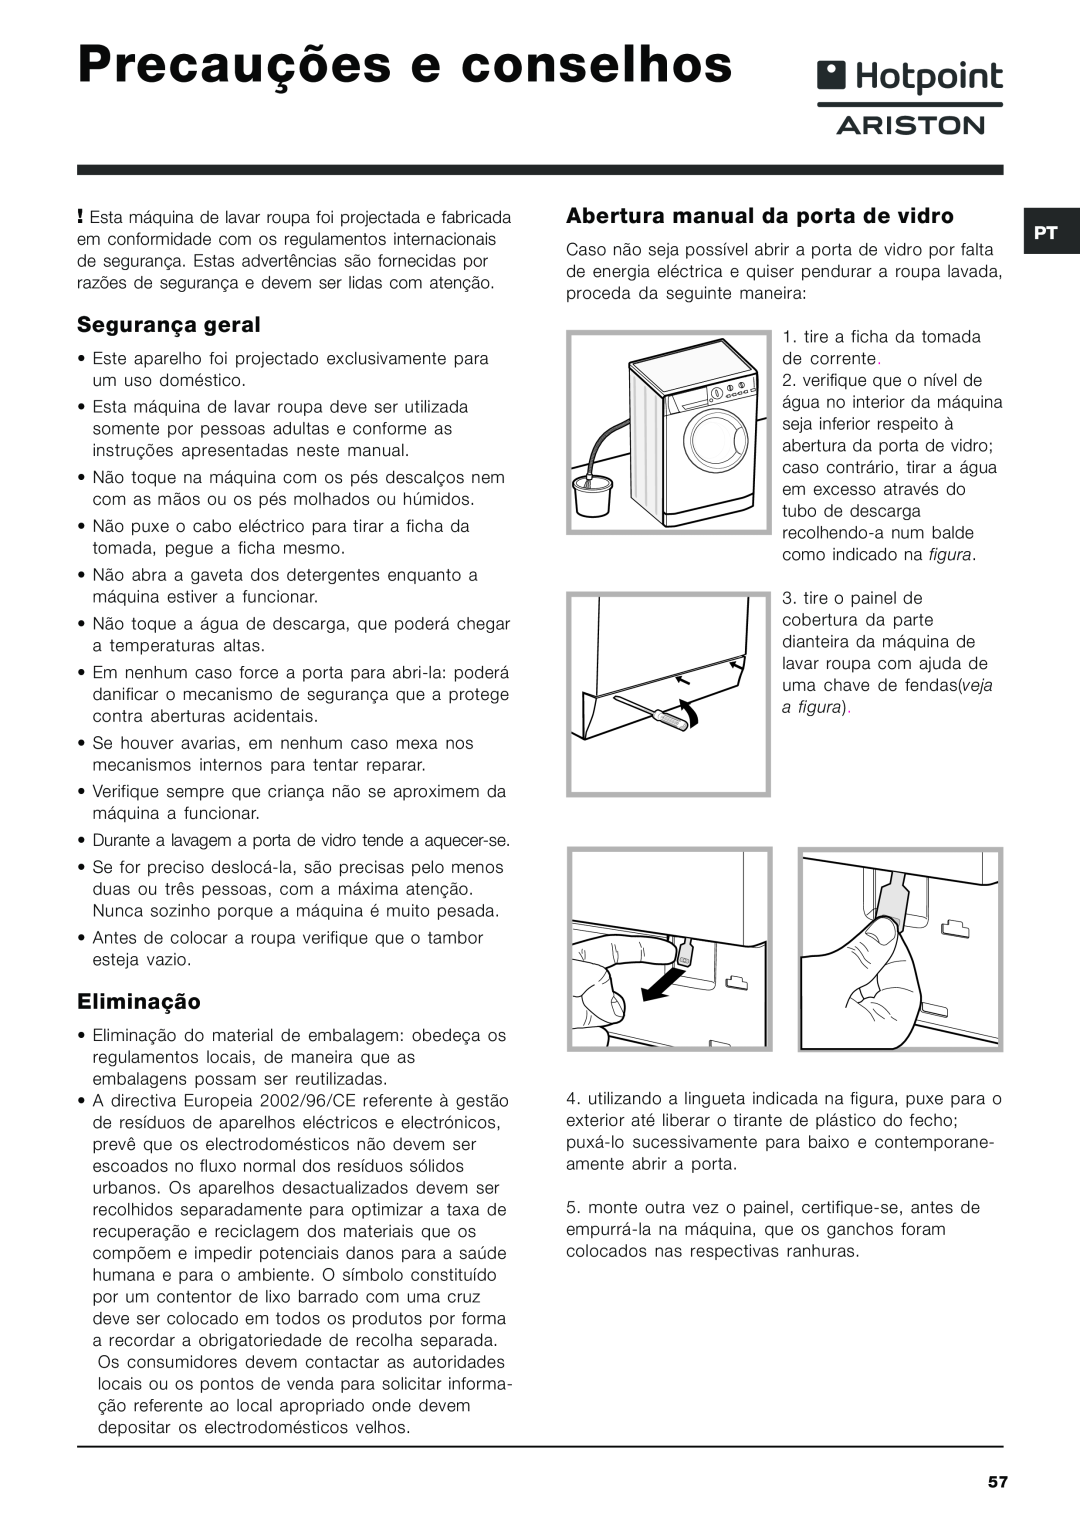 Hotpoint ARXXL105 Precauções e conselhos, Abertura manual da porta de vidro, Segurança geral, Eliminação 